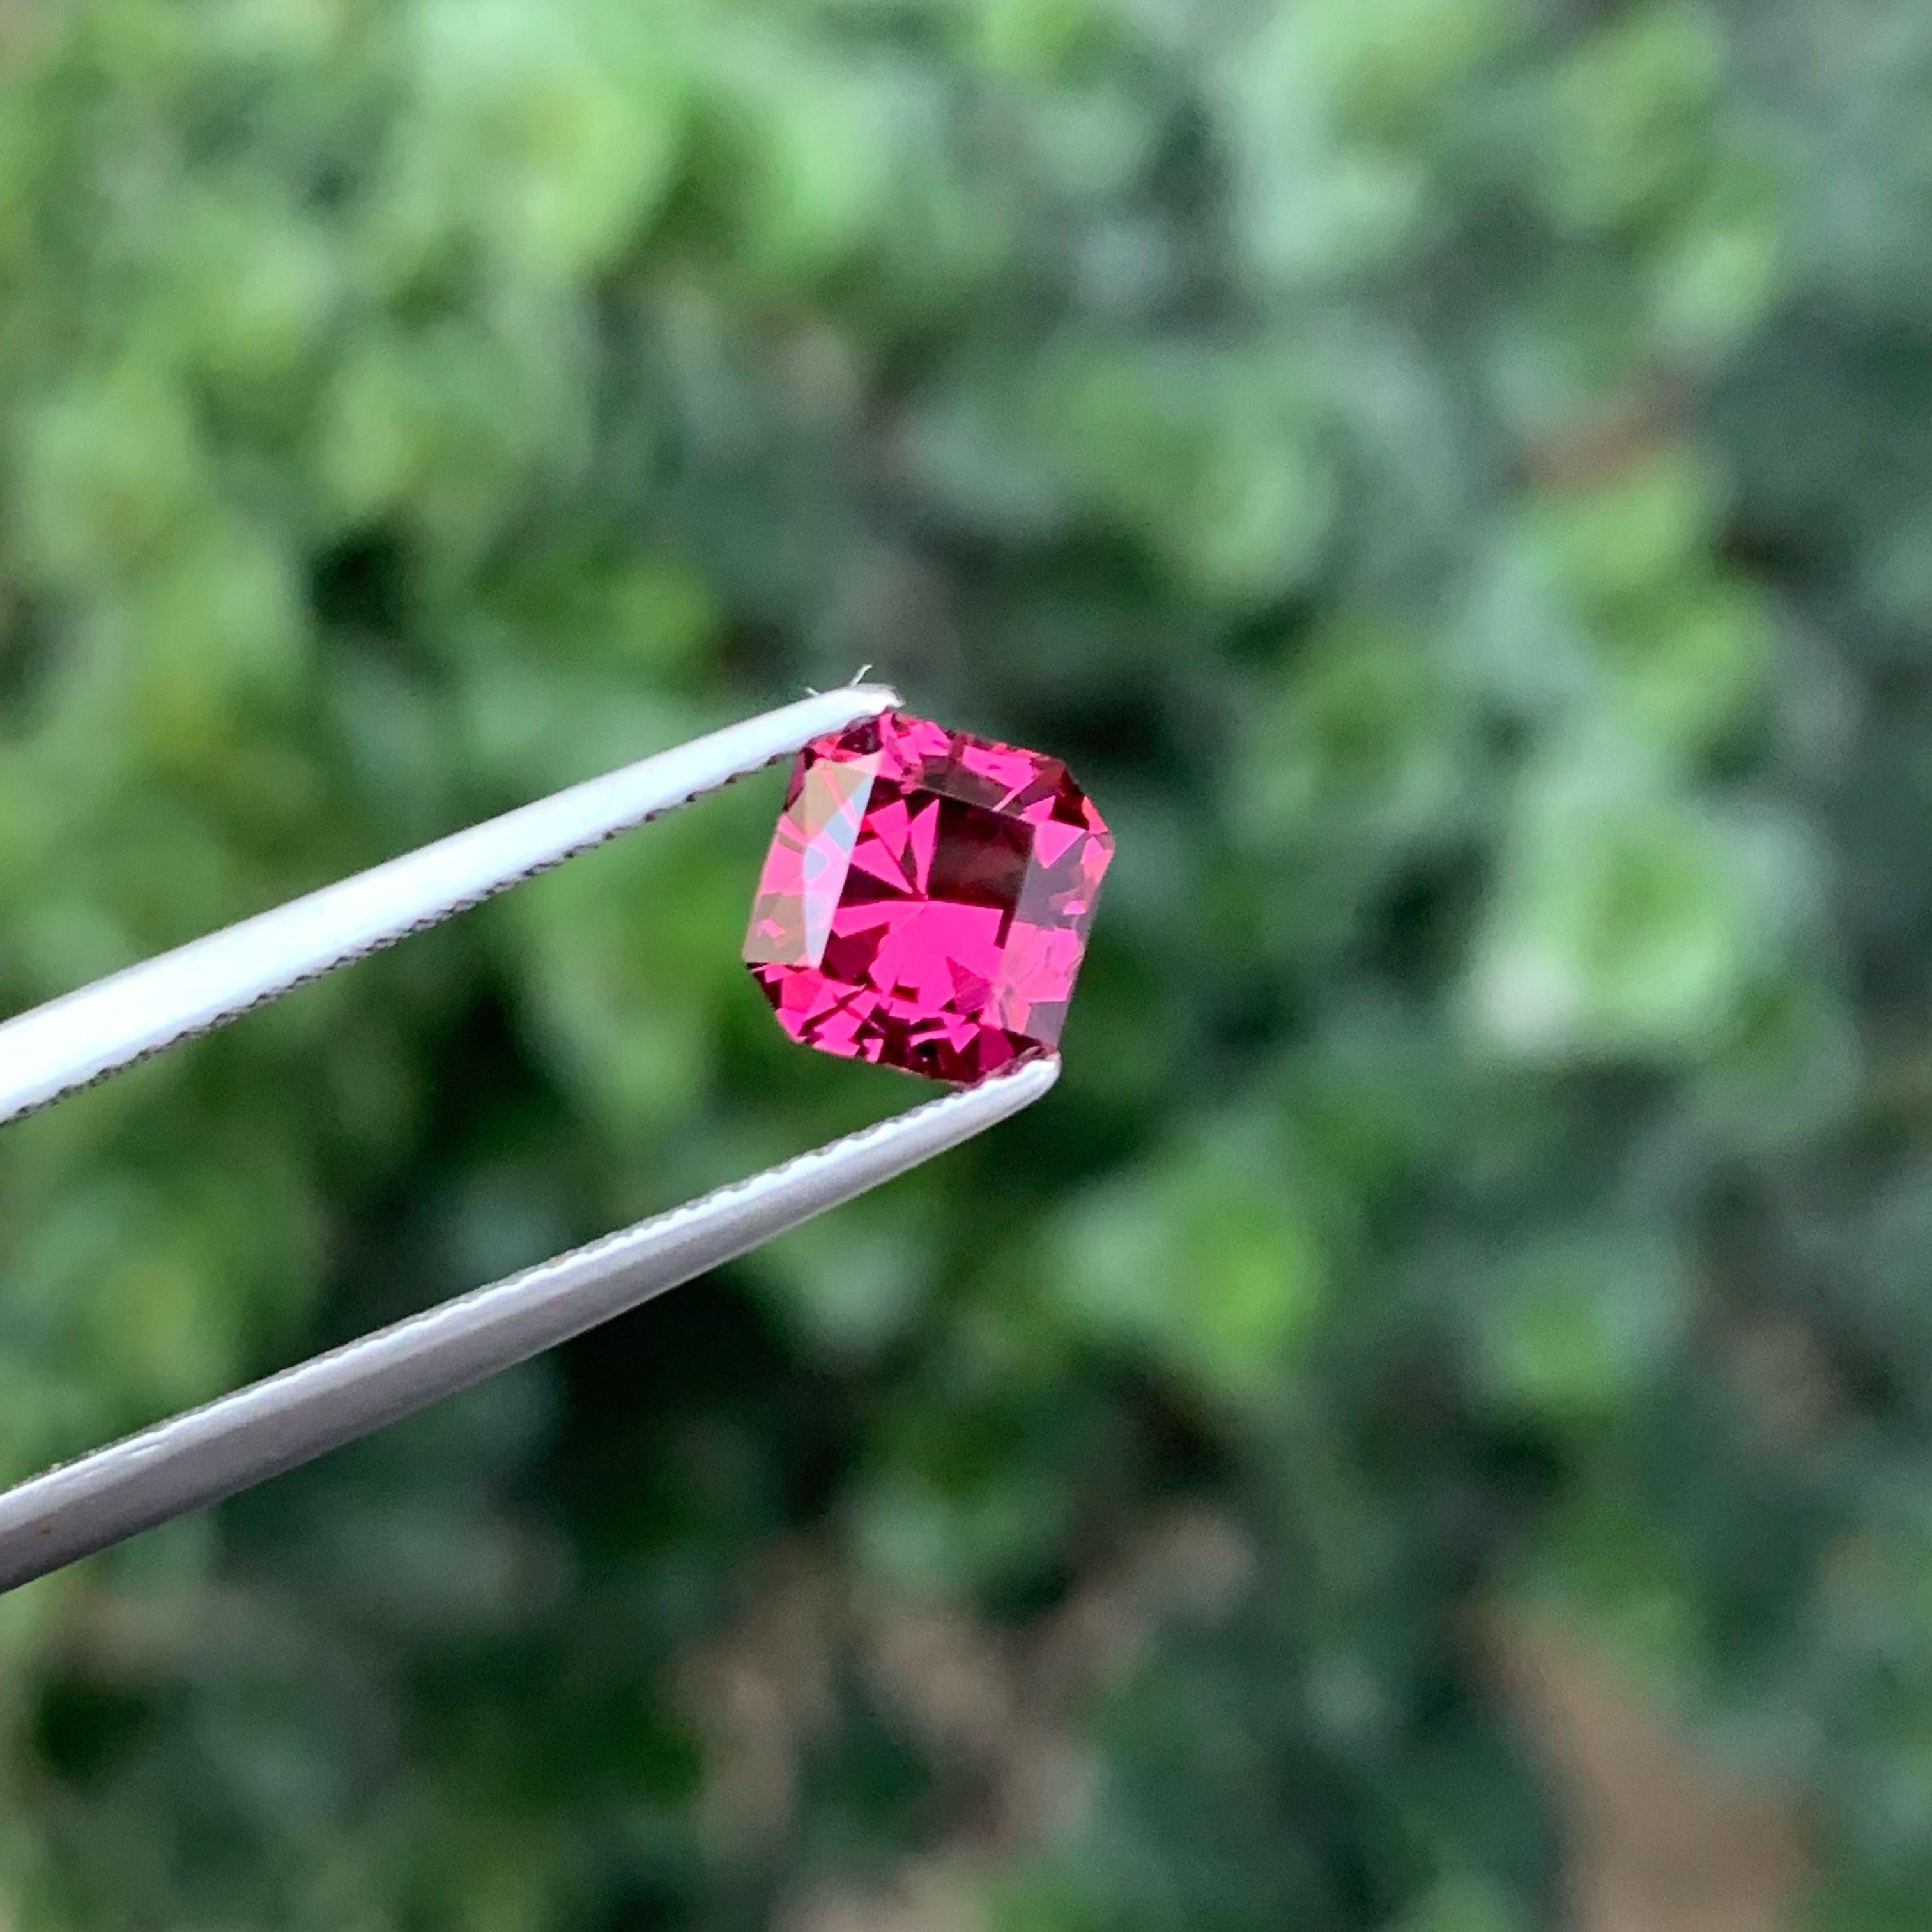 Unglaubliche Hot Pink Granat Edelstein von 1,40 Karat aus Malawi hat einen wunderbaren Schliff in einem Octagon Form, unglaubliche rote Farbe, große Brillanz. Dieser Edelstein ist von augenreiner Klarheit.

Informationen zum Produkt:
NAME DES